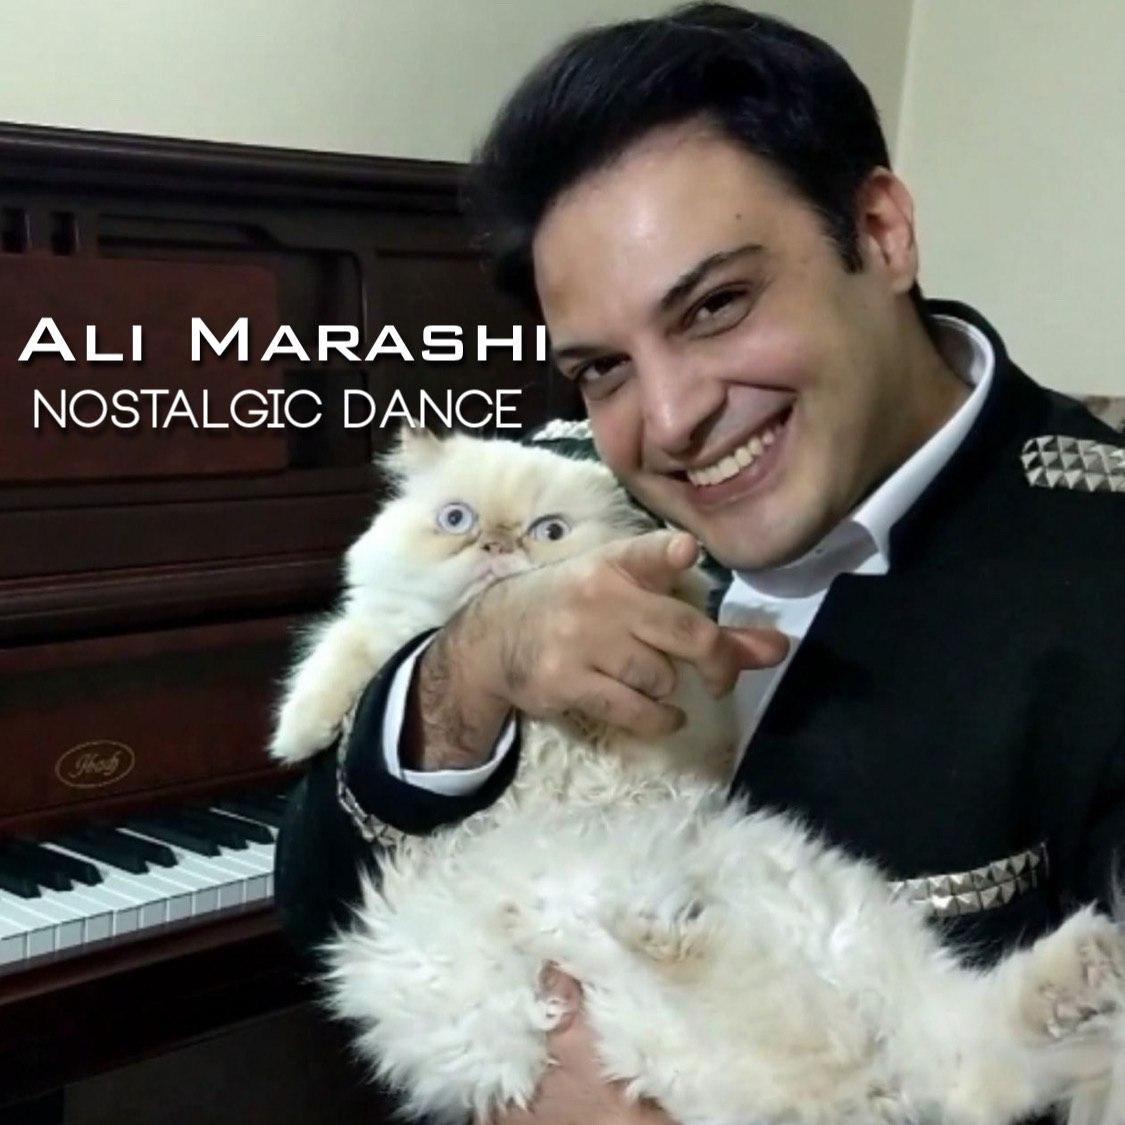  دانلود آهنگ جدید علی مرعشی - نوستالژیک دنس | Download New Music By Ali Marashi - Nostalgic Dance